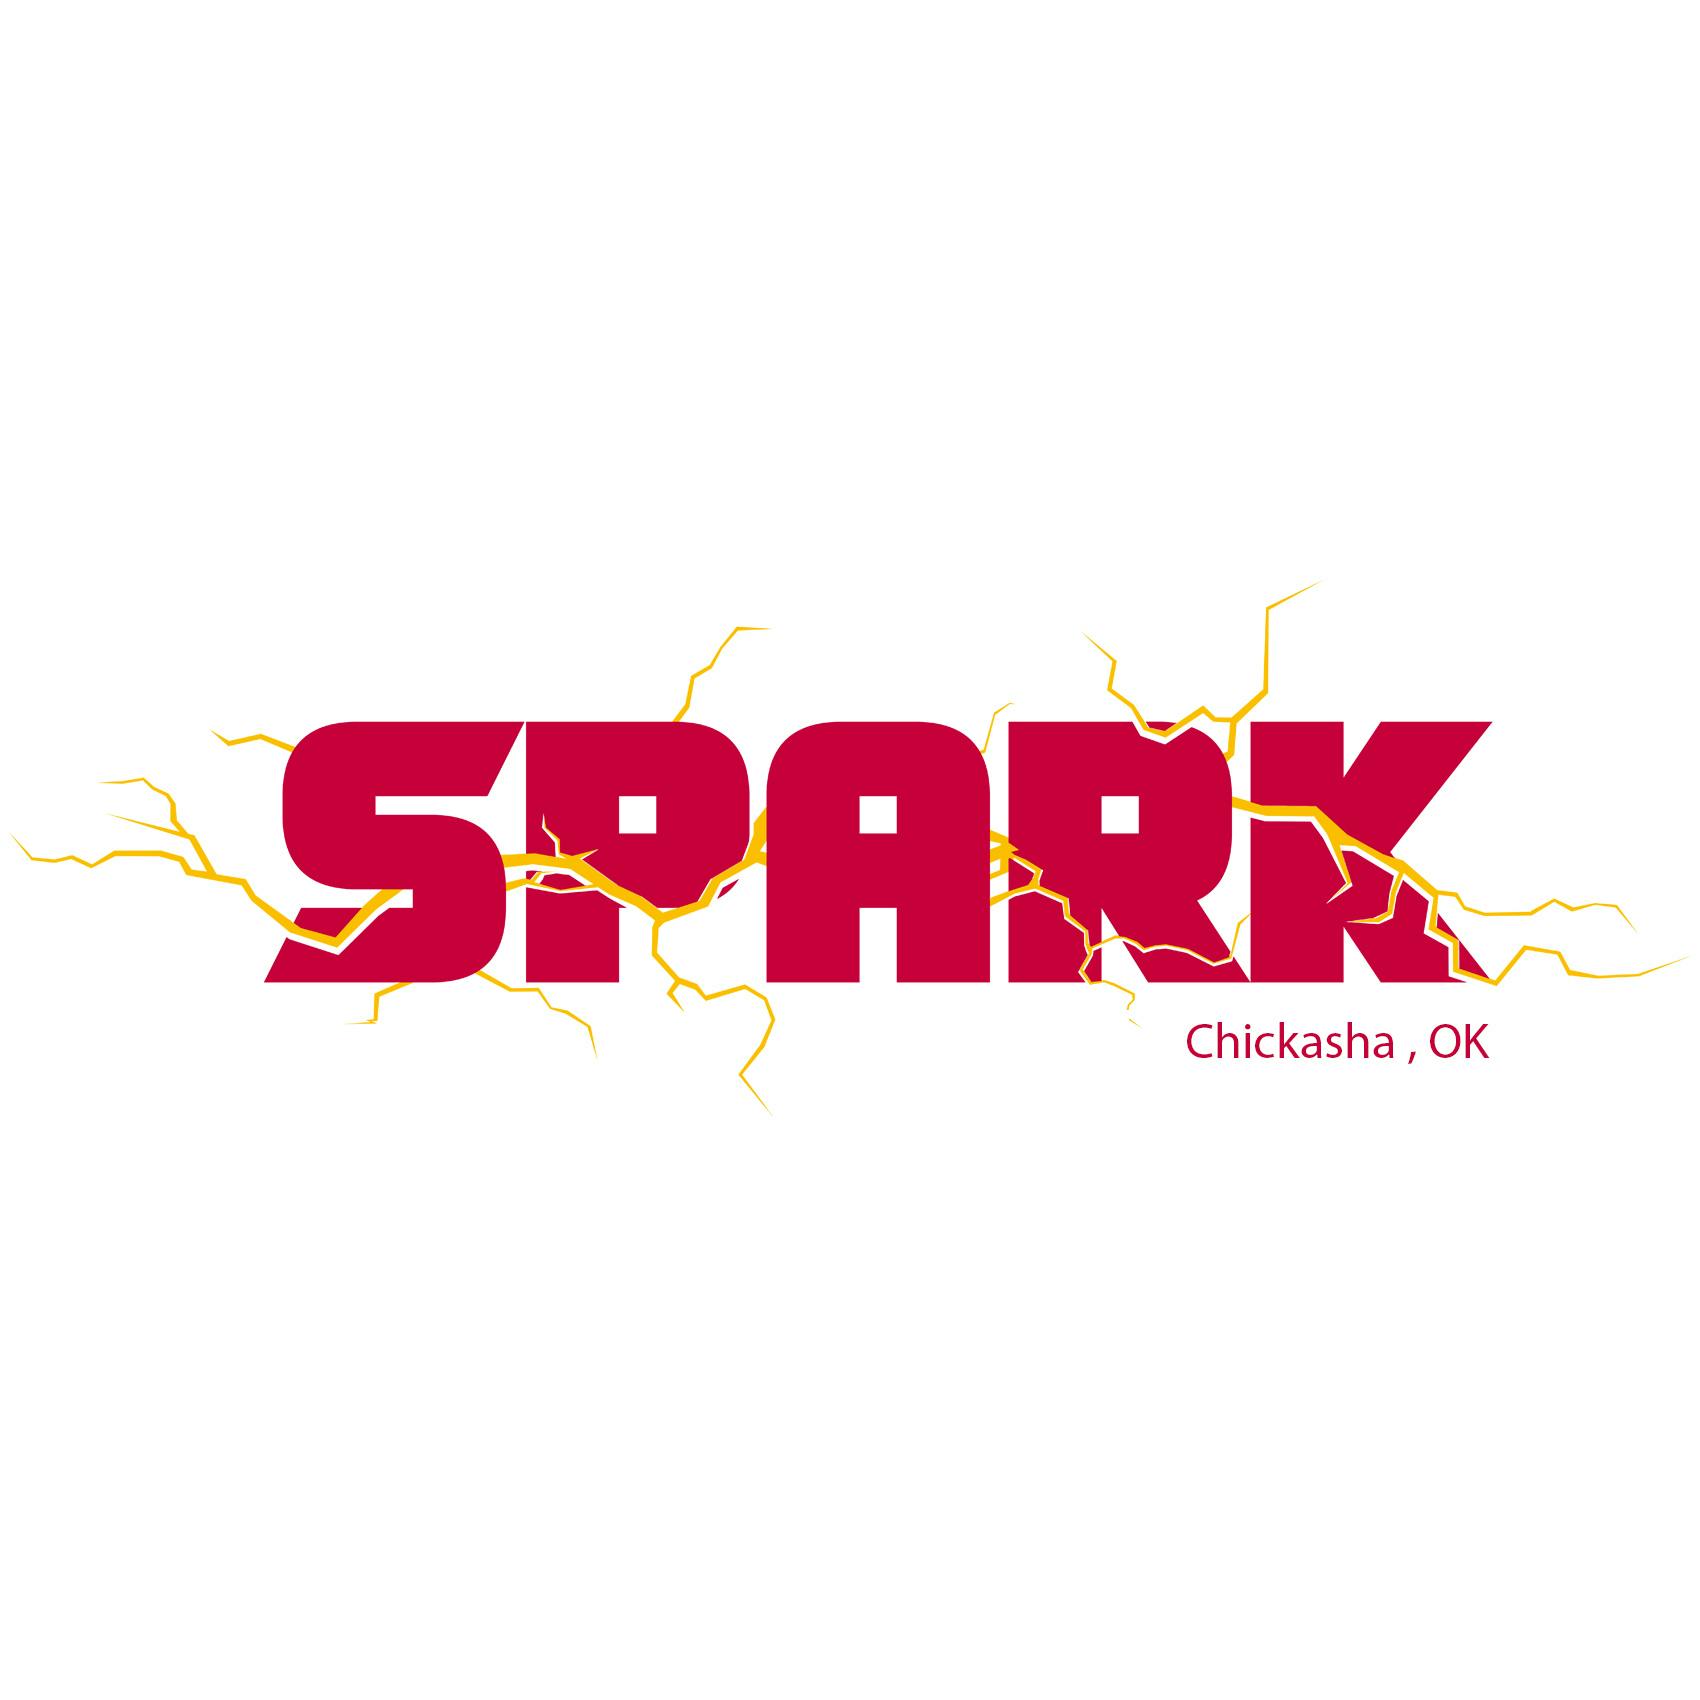 Spark Dispensary-logo